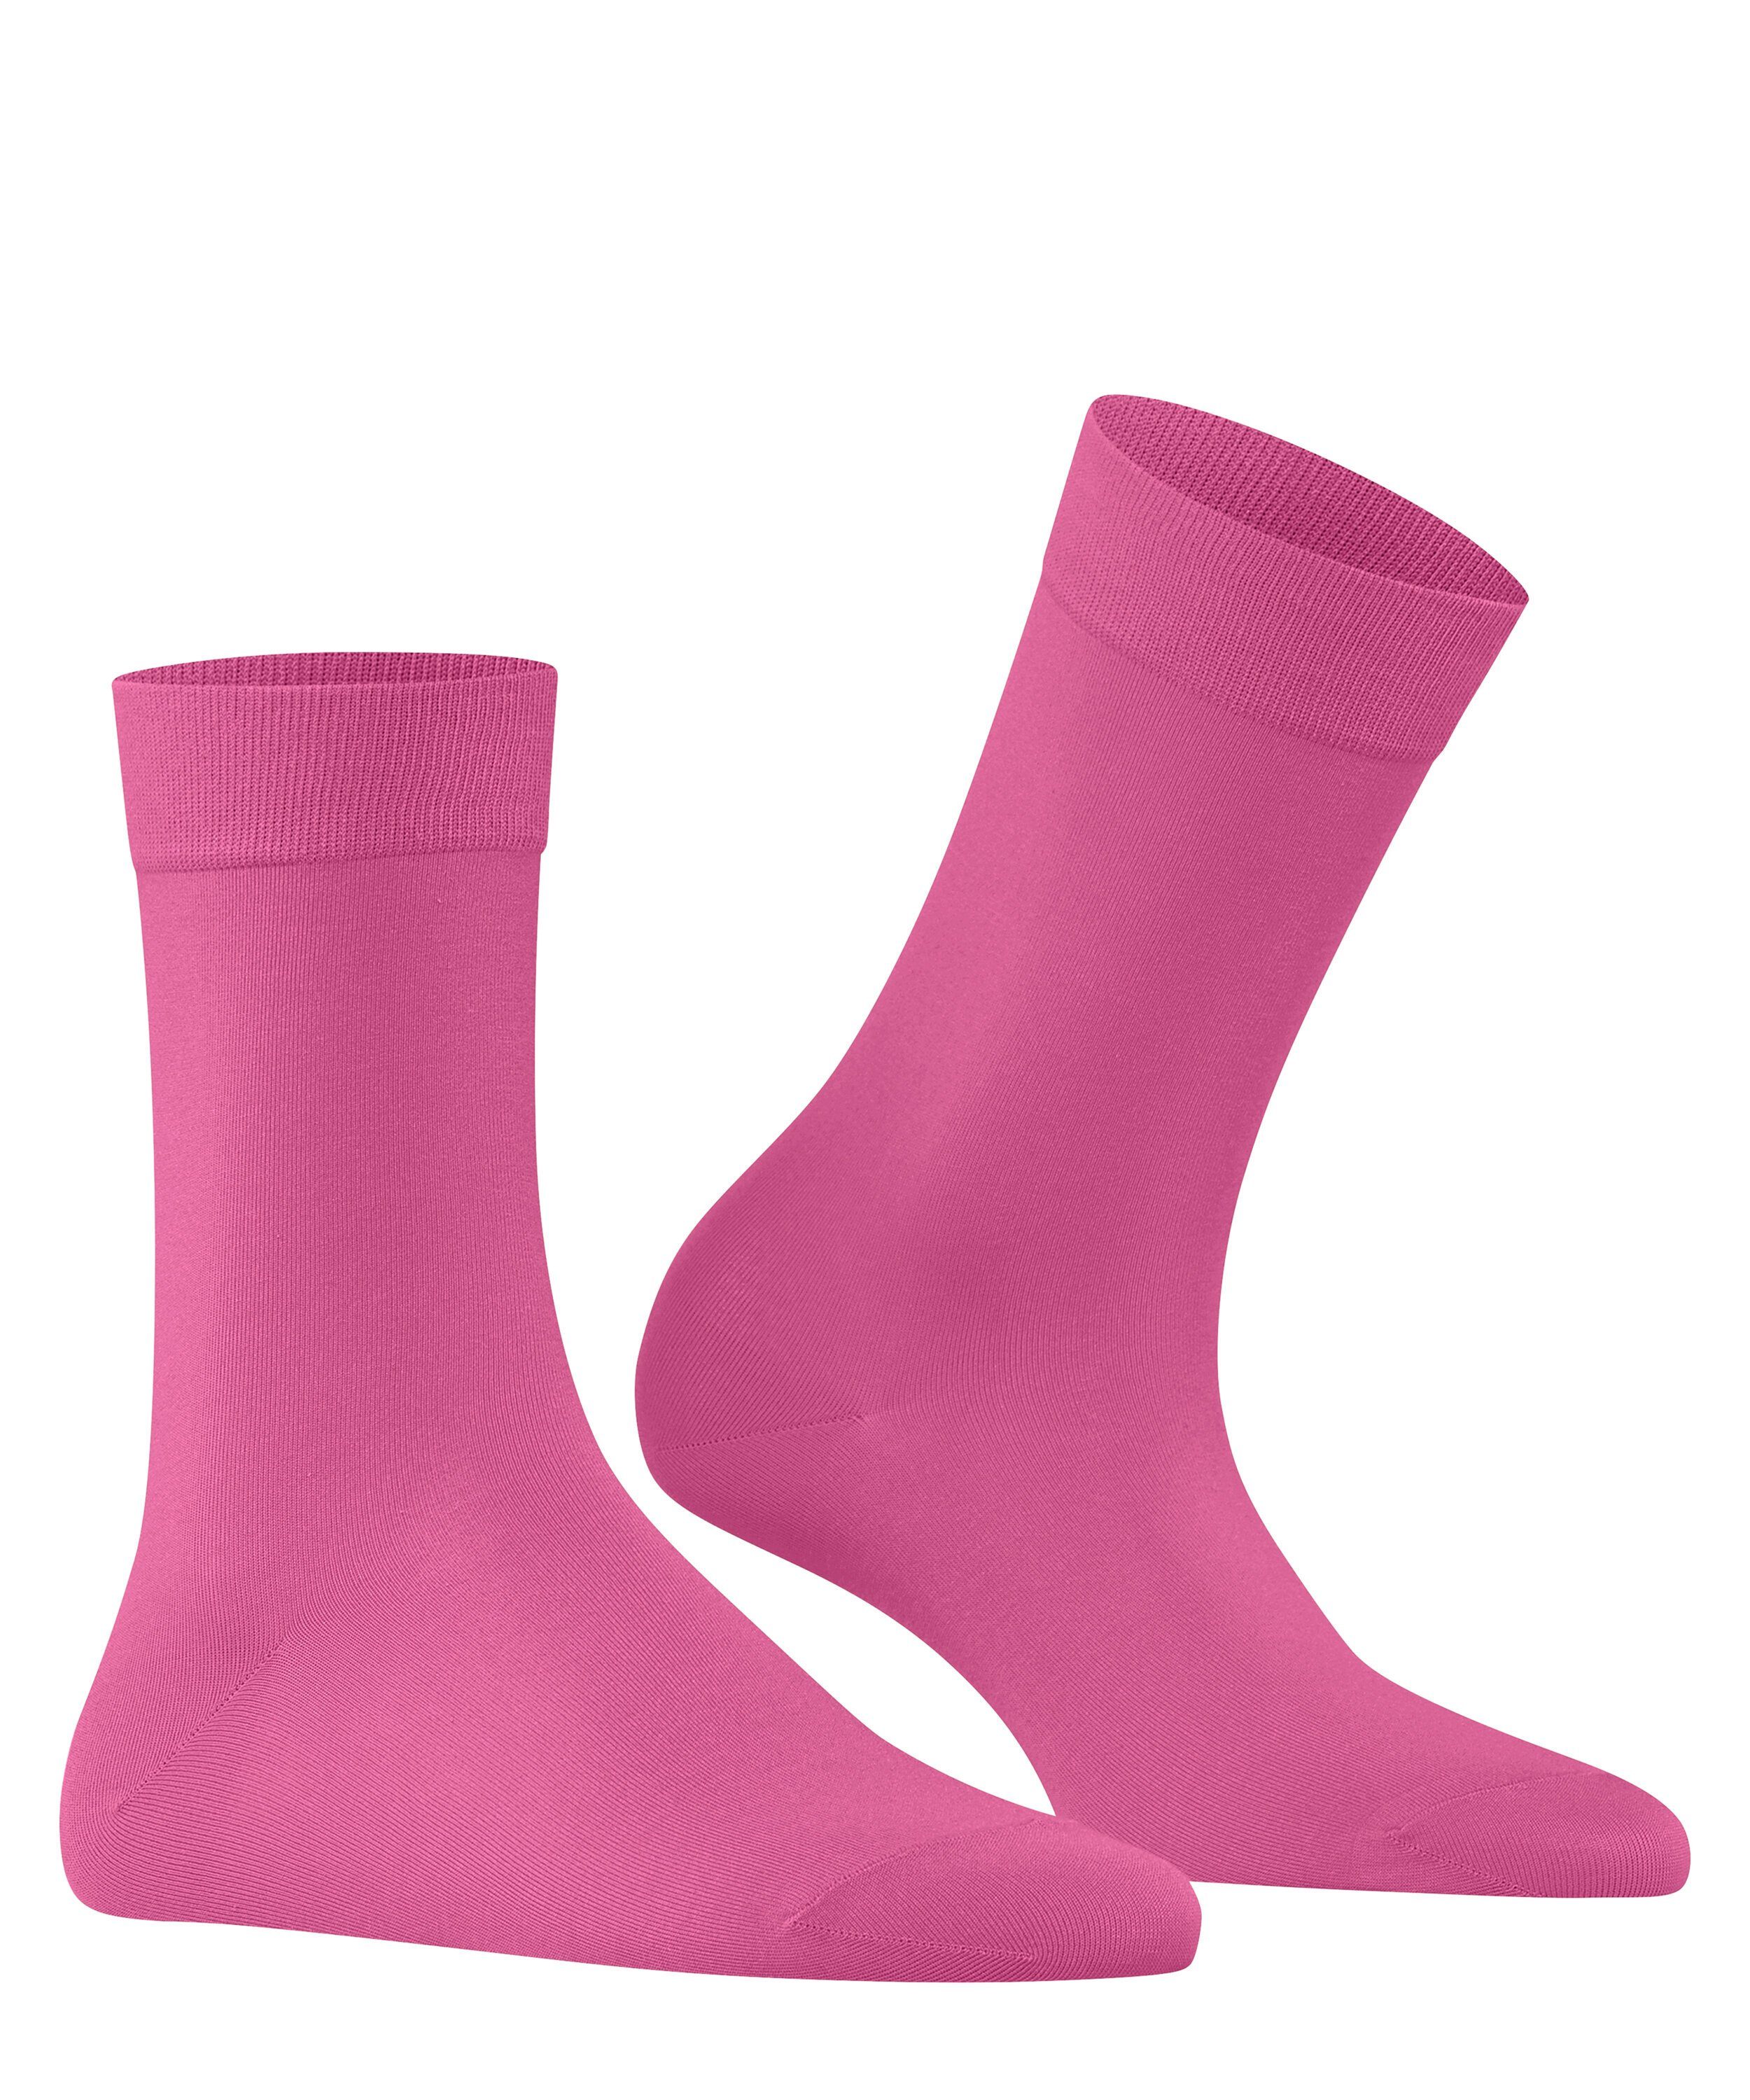 FALKE Socken Cotton Touch pink (8462) (1-Paar)